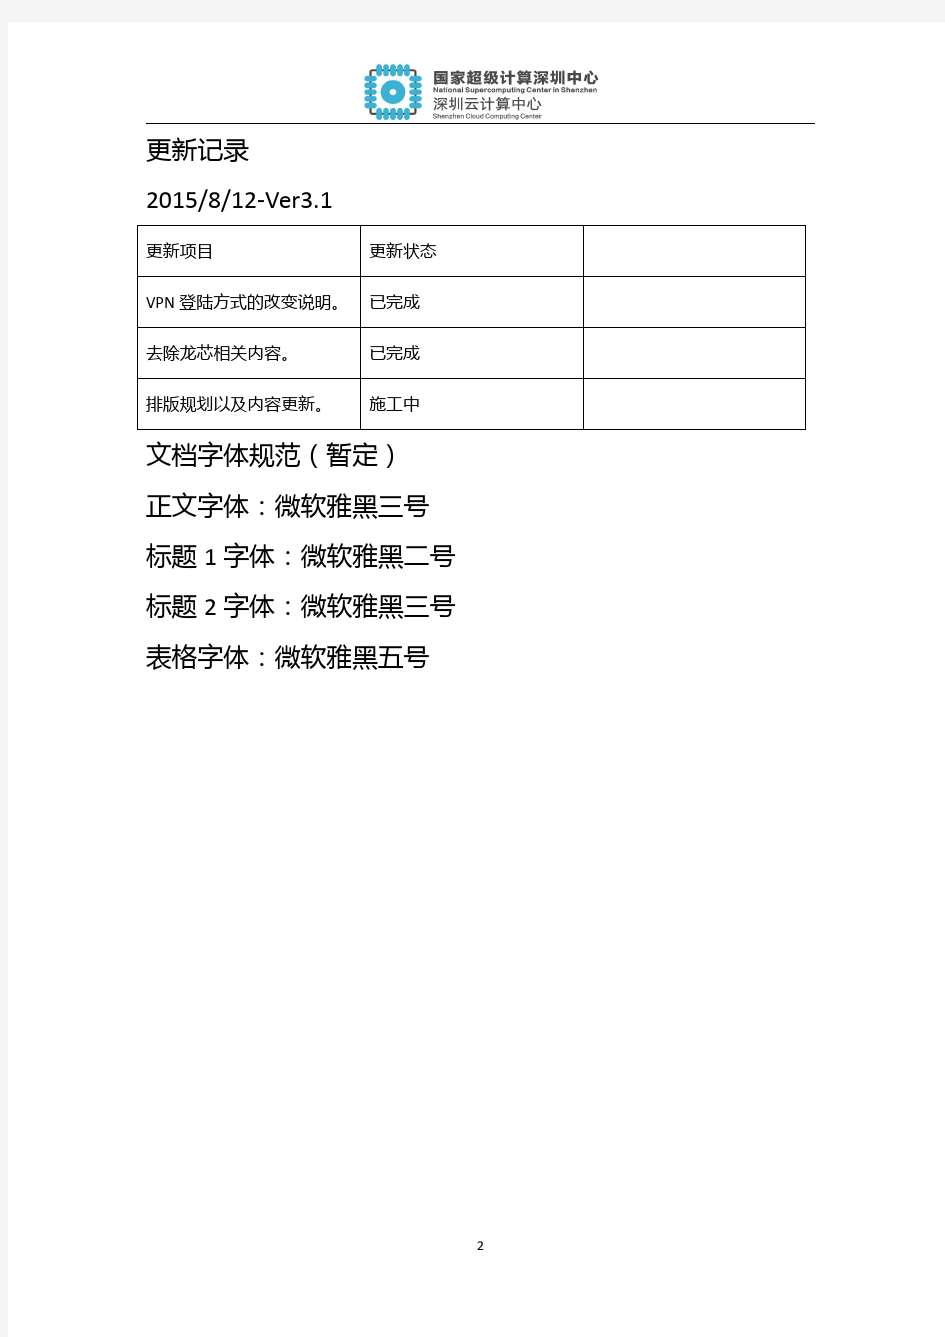 深圳超算HPC使用手册v3.2